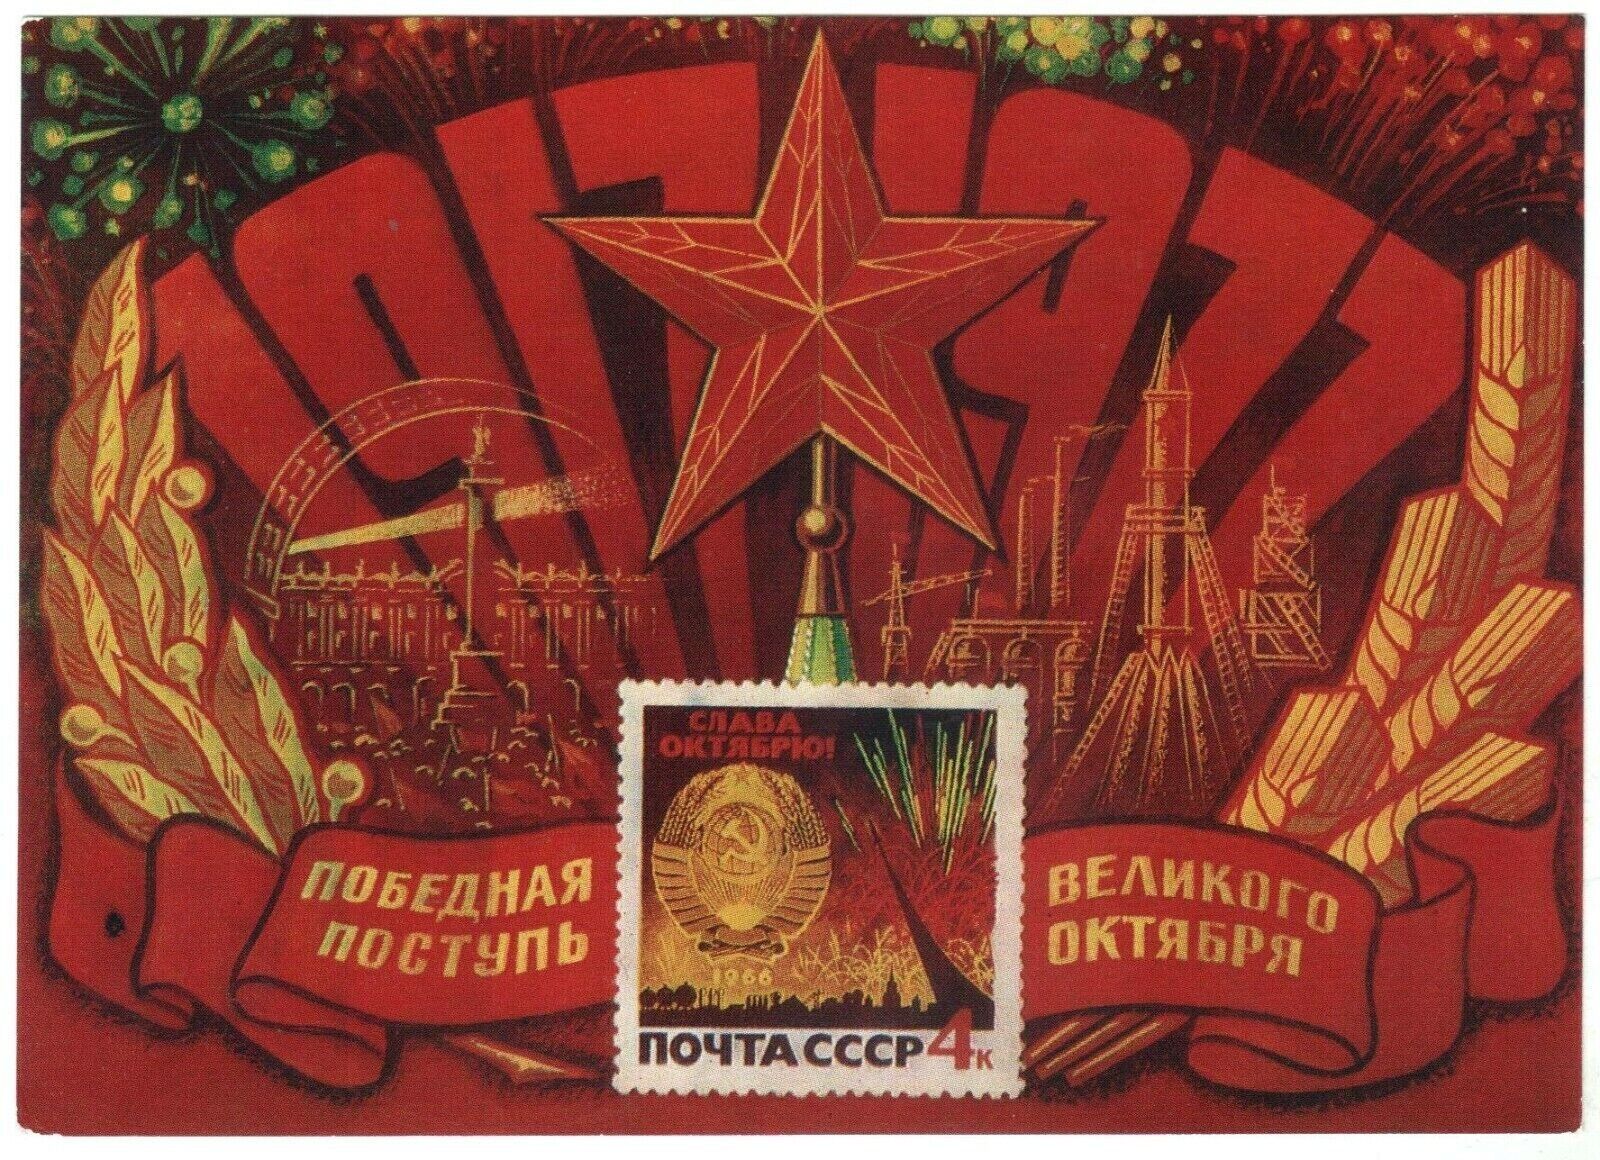 1977 Glory October Kremlin Star Rocket Propaganda Cosmos Old Russian postcard